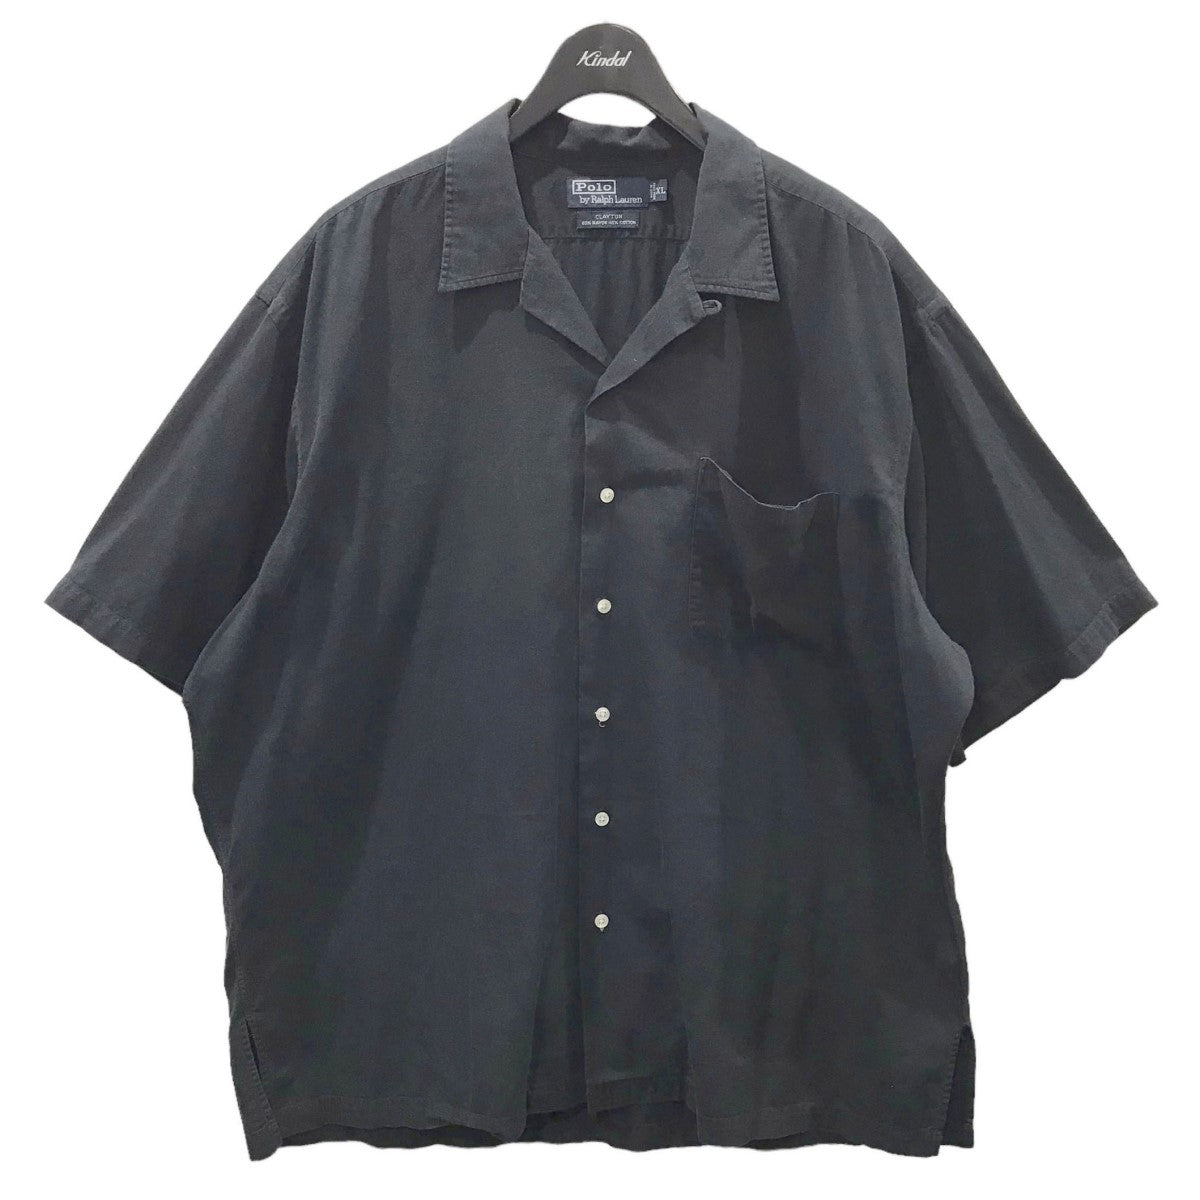 POLO RALPH LAUREN(ポロラルフローレン) 90s オープンカラー半袖シャツ 